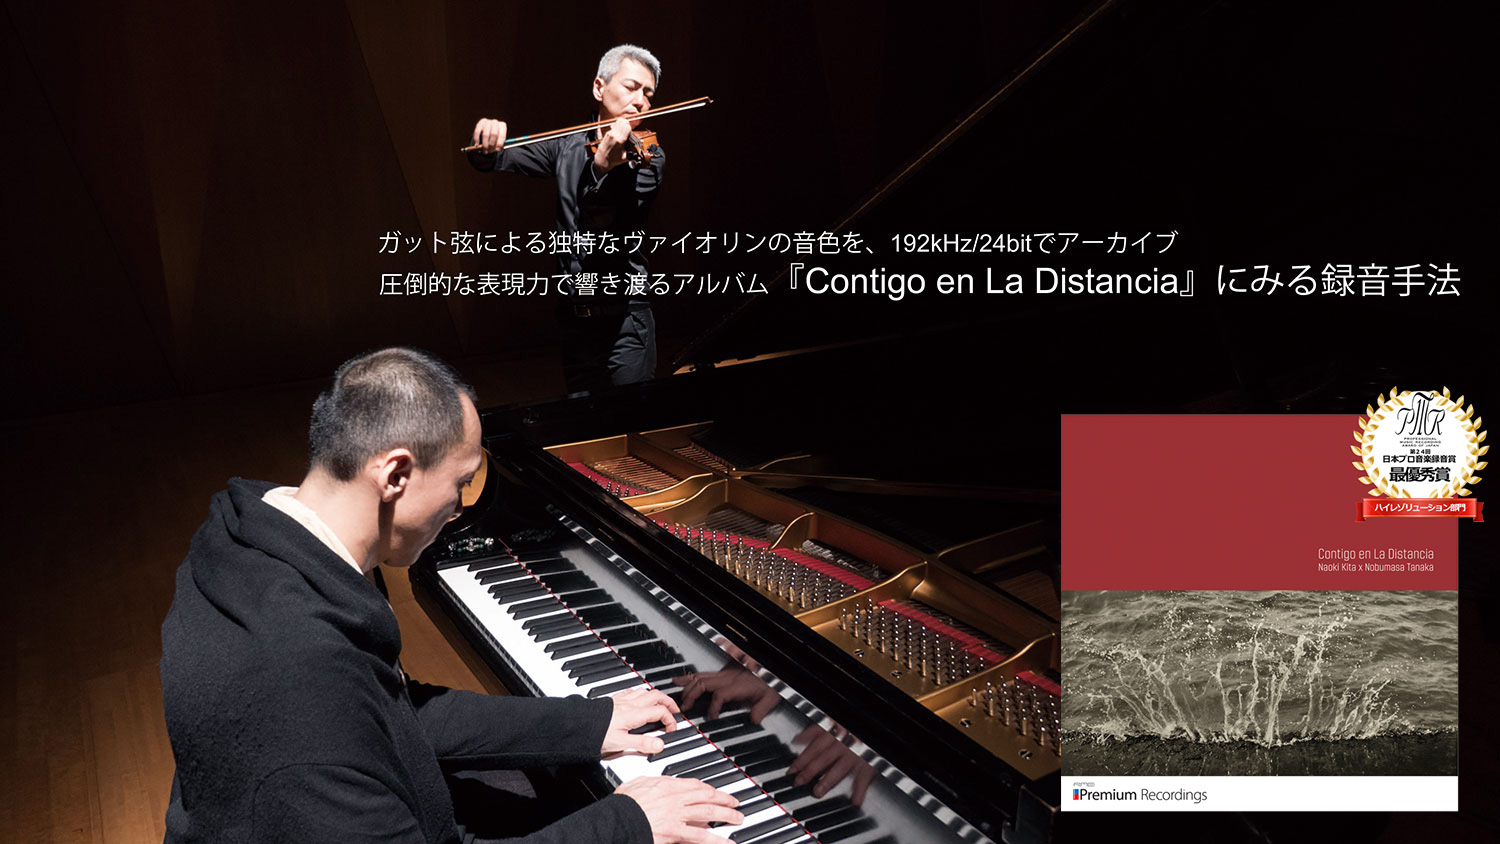 現代のクラシック音楽ではあまり使用されないガット弦による独特なヴァイオリンの音色を、192kHz/24bitでアーカイブ。圧倒的な表現力で響き渡るアルバム『Contigo en La Distancia』にみる録音手法